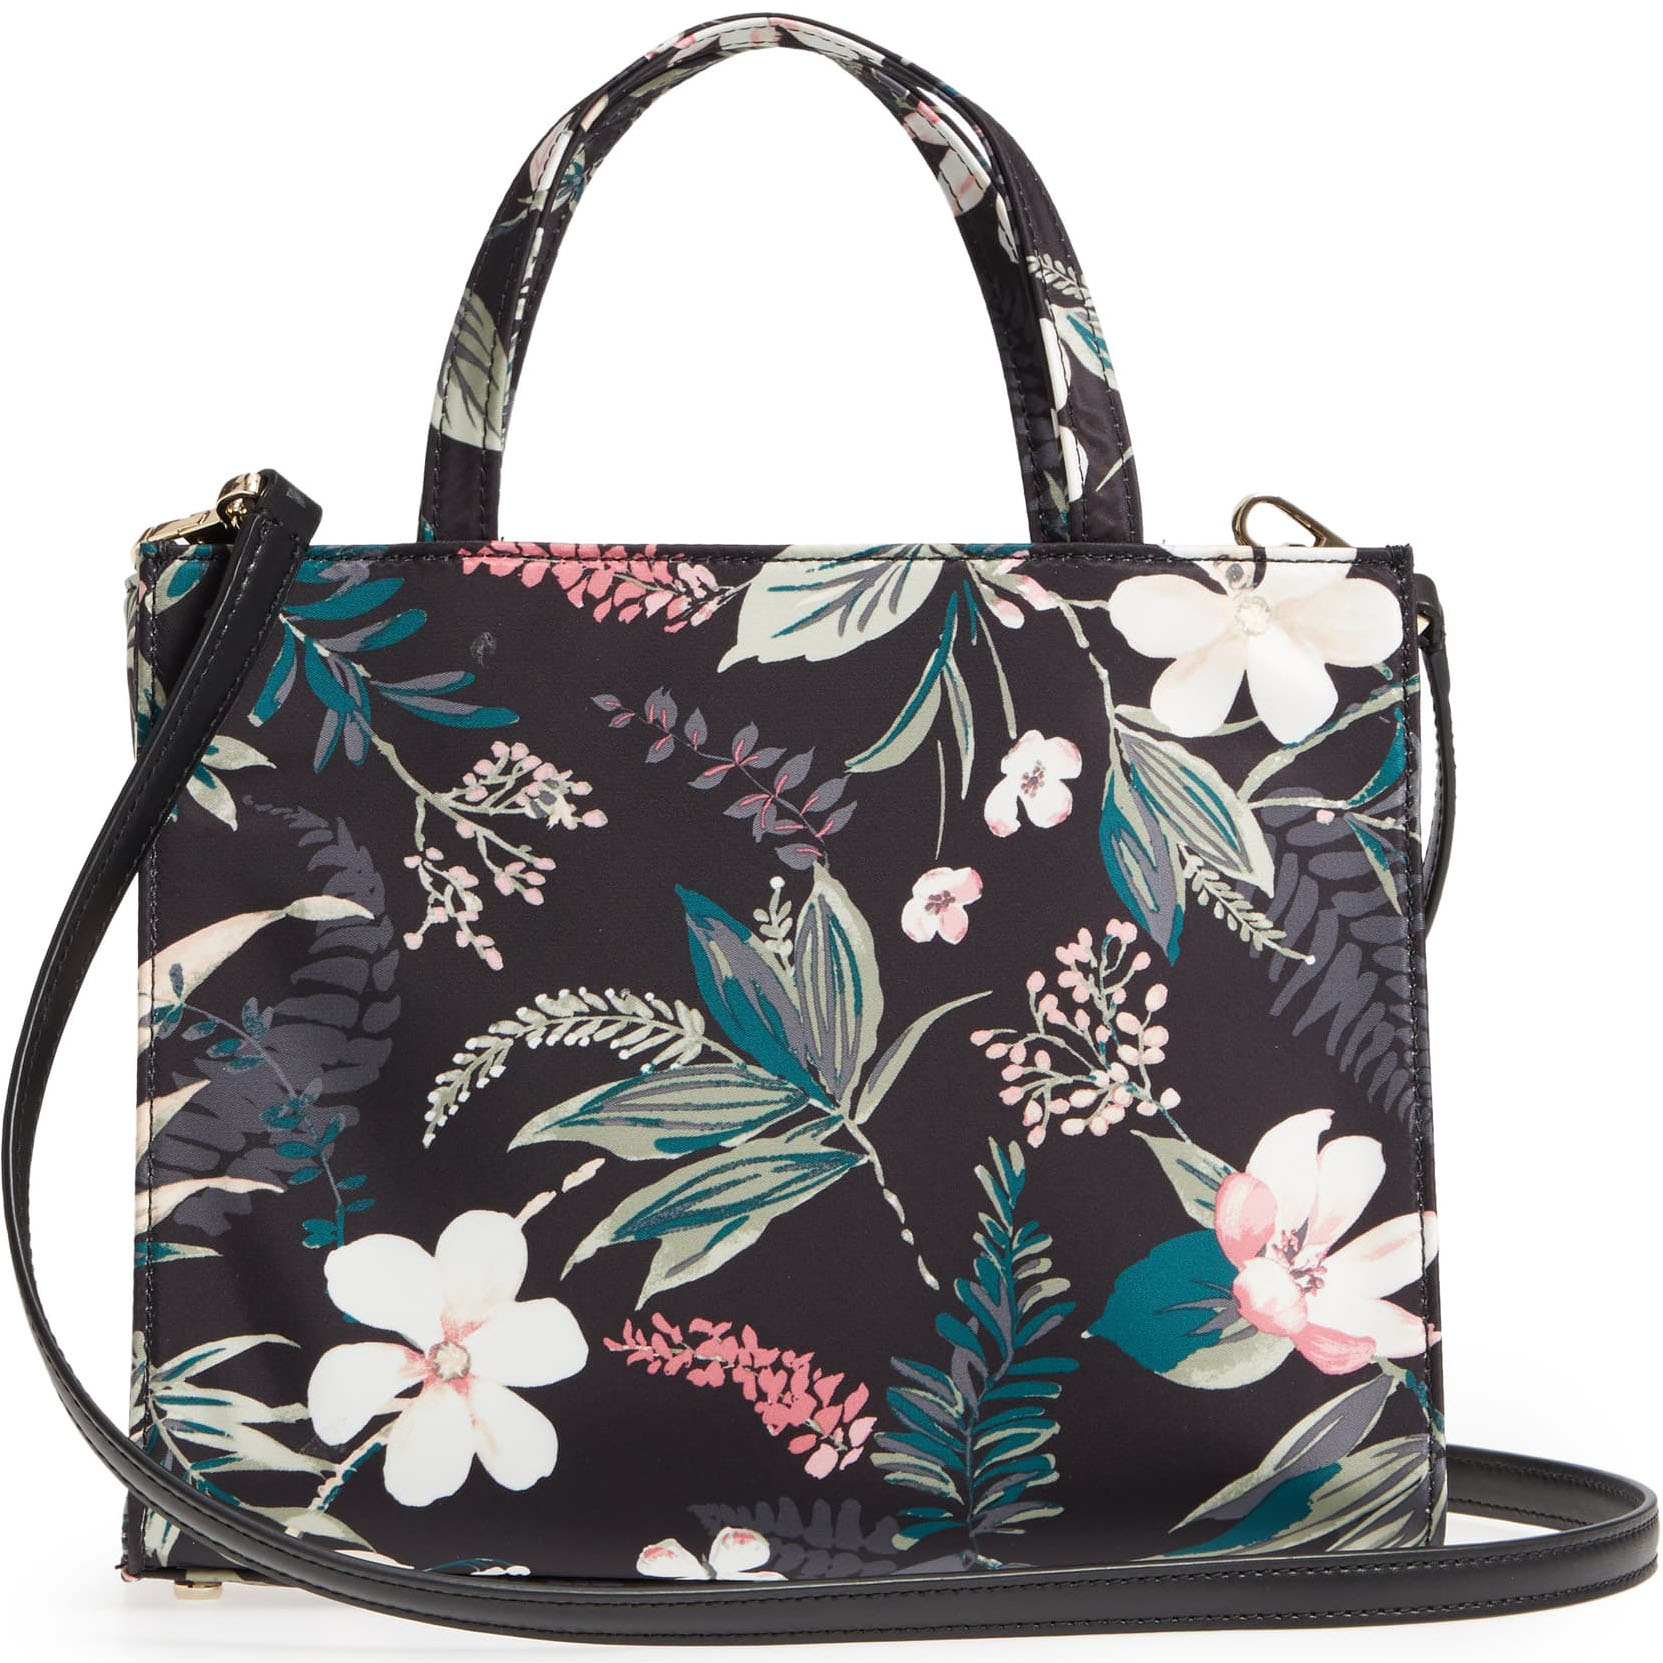 Kate Spade Watson Lane Botanical Sam Crossbody Bag Black Floral # PXRU8816